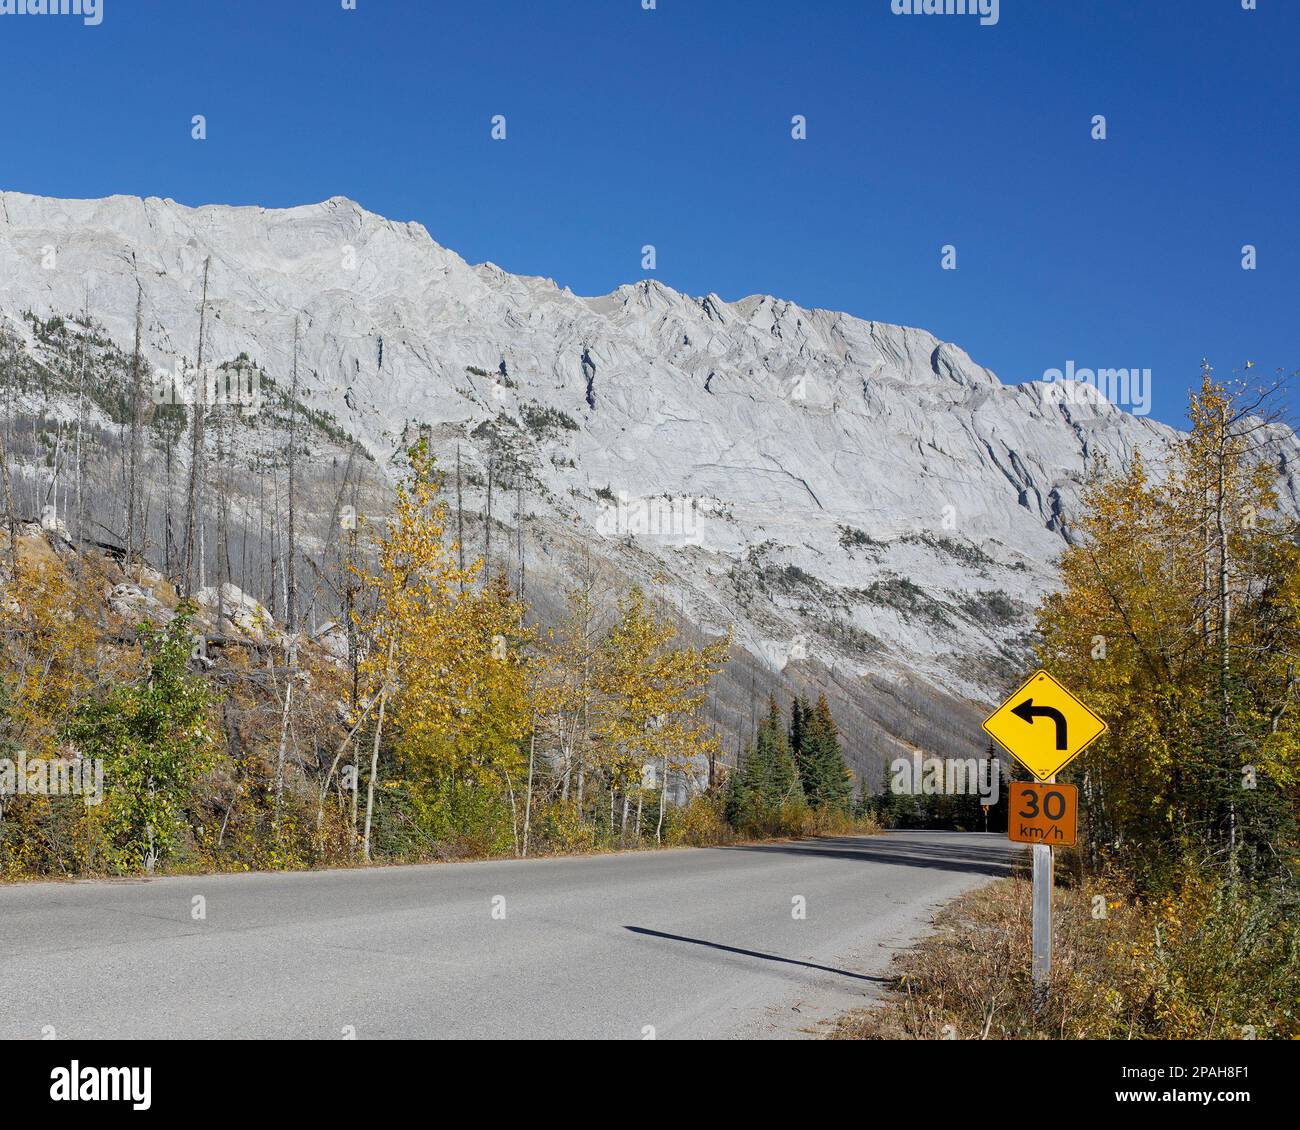 Signalisation routière avec limite de vitesse de 30 km/h et avertissement pour la courbe à venir sur une route à travers les montagnes avec ciel bleu dans le parc national Jasper, Canada Banque D'Images